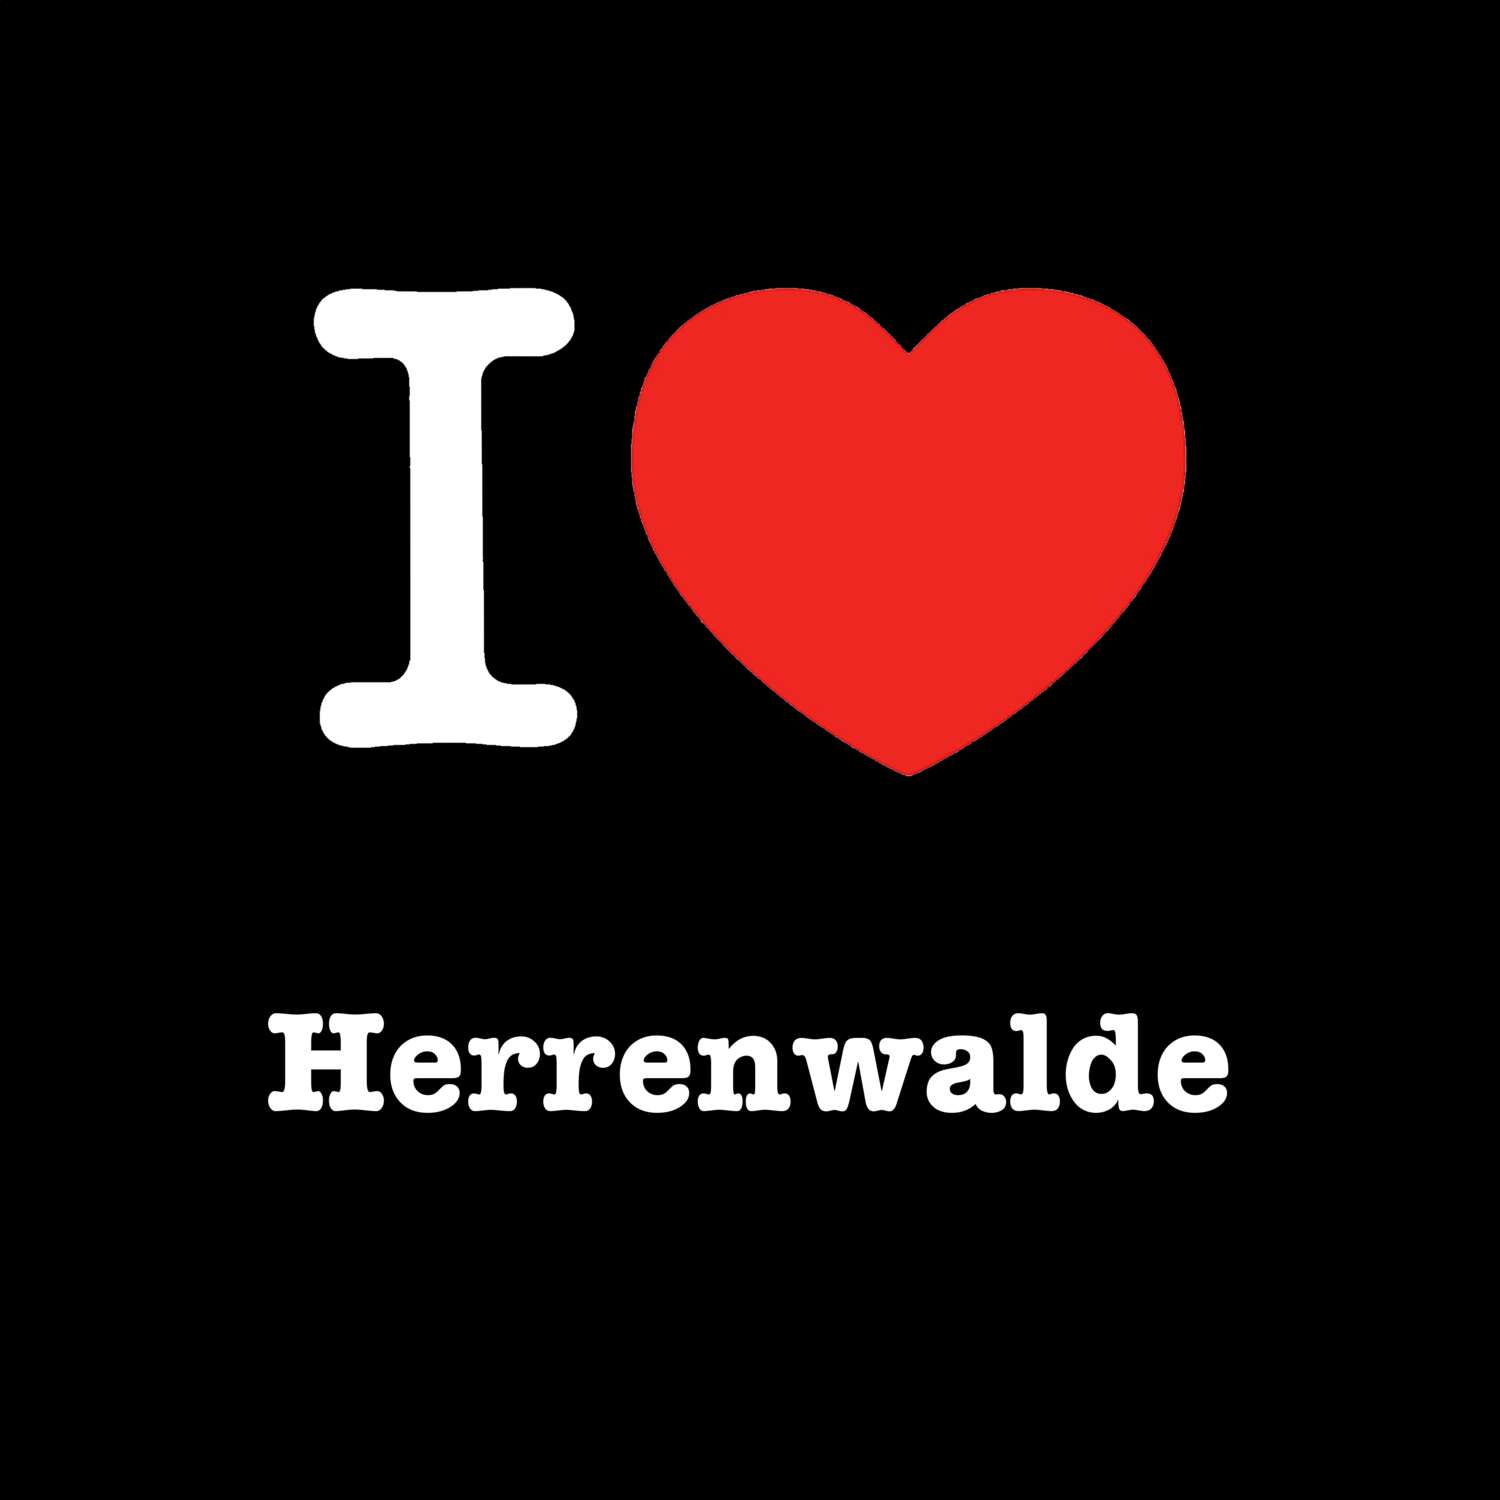 Herrenwalde T-Shirt »I love«